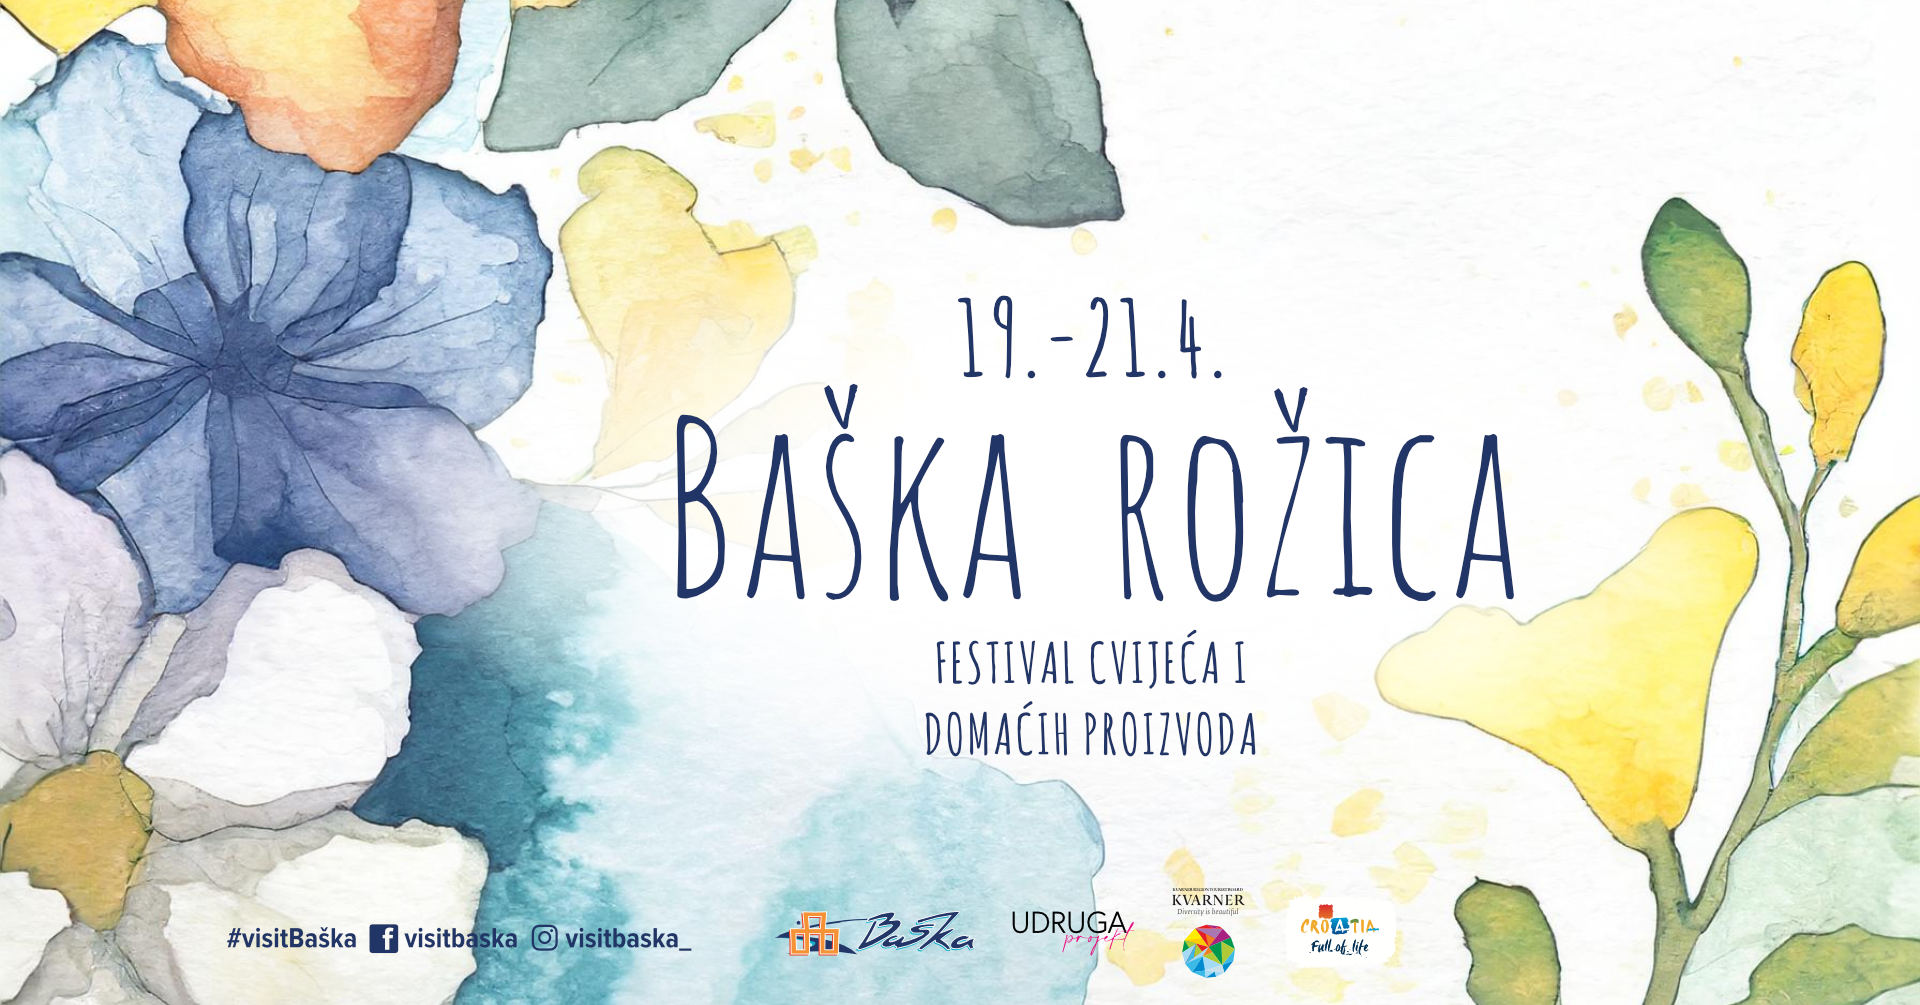 Festival cvijeća: Baška rožica 19.4. - 21.4.2024.